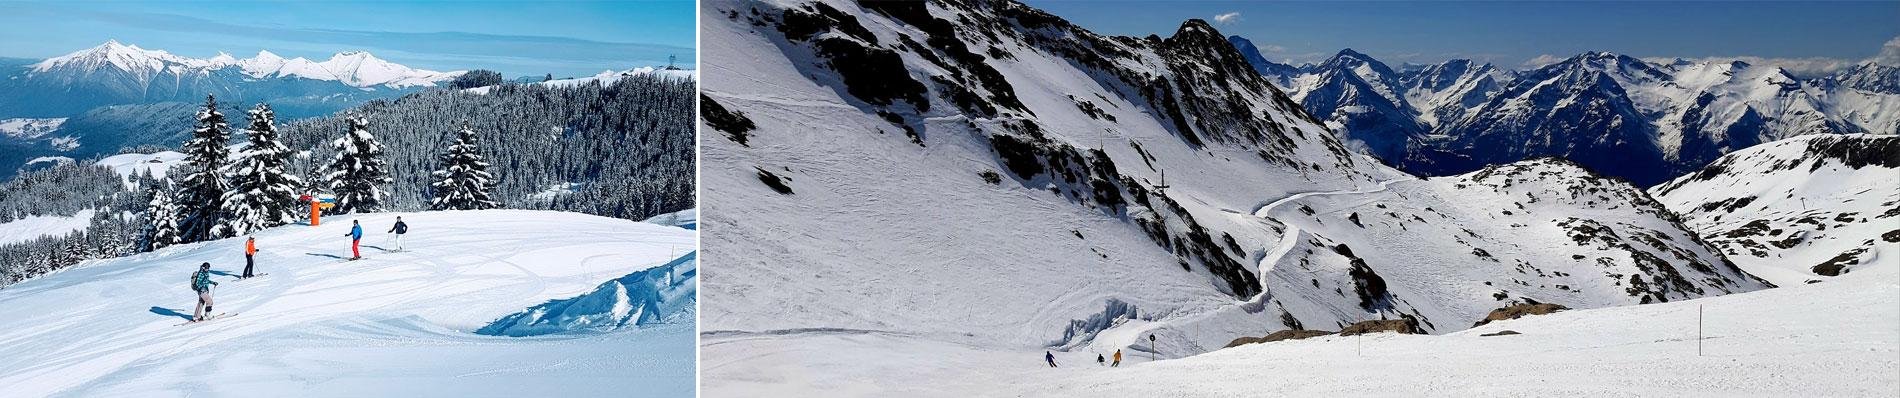 frankrijk wintersport franse alpen sneeuw skivakantie